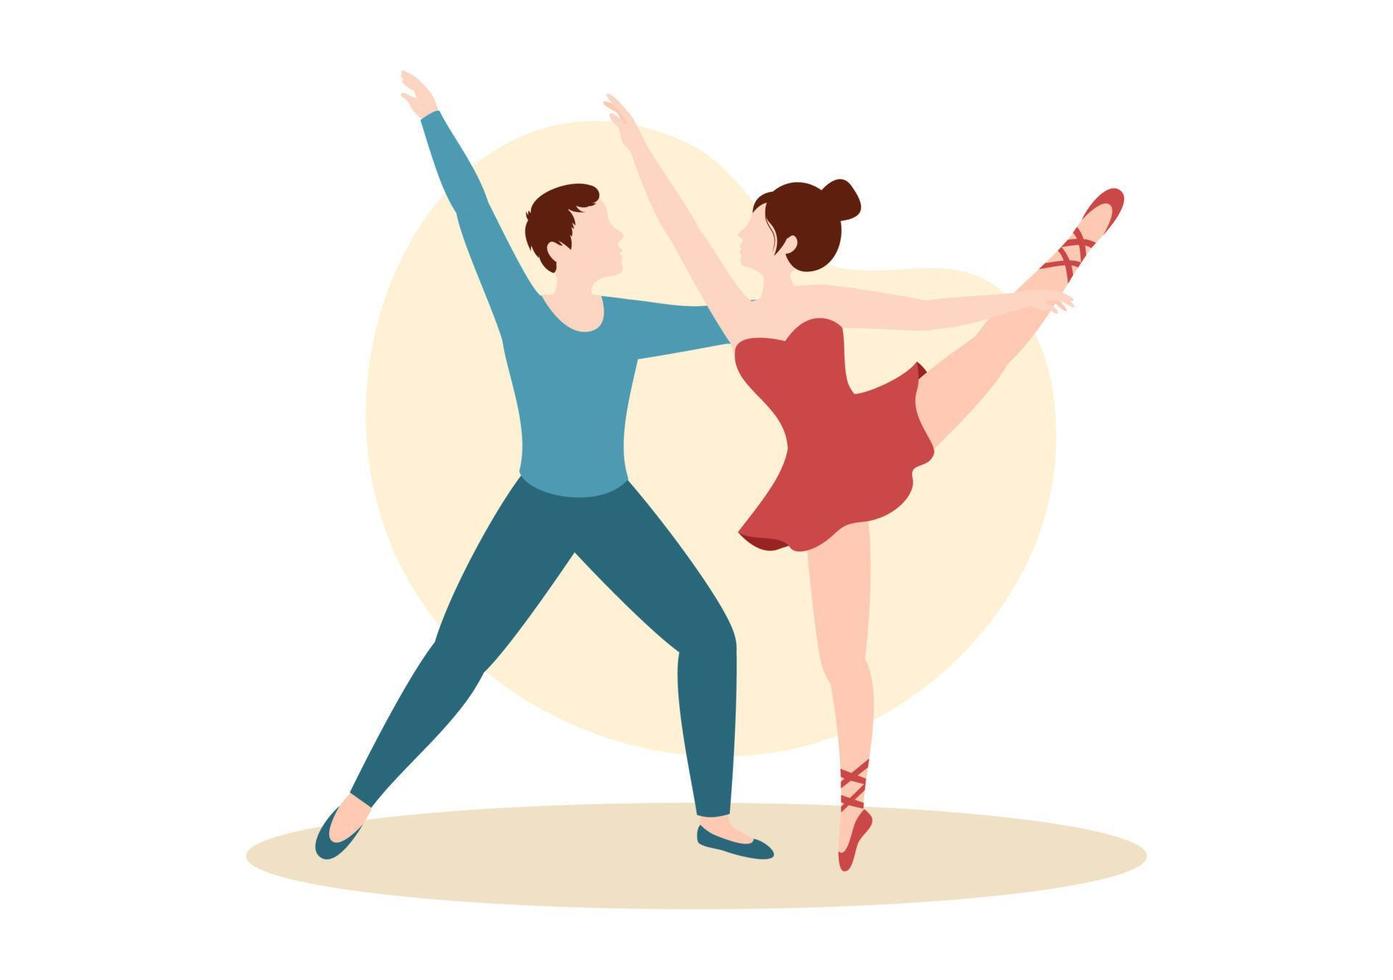 plantilla de ballet dibujado a mano dibujos animados ilustración plana pareja bailarina bailando vistiendo trajes de tutú en el diseño del escenario vector